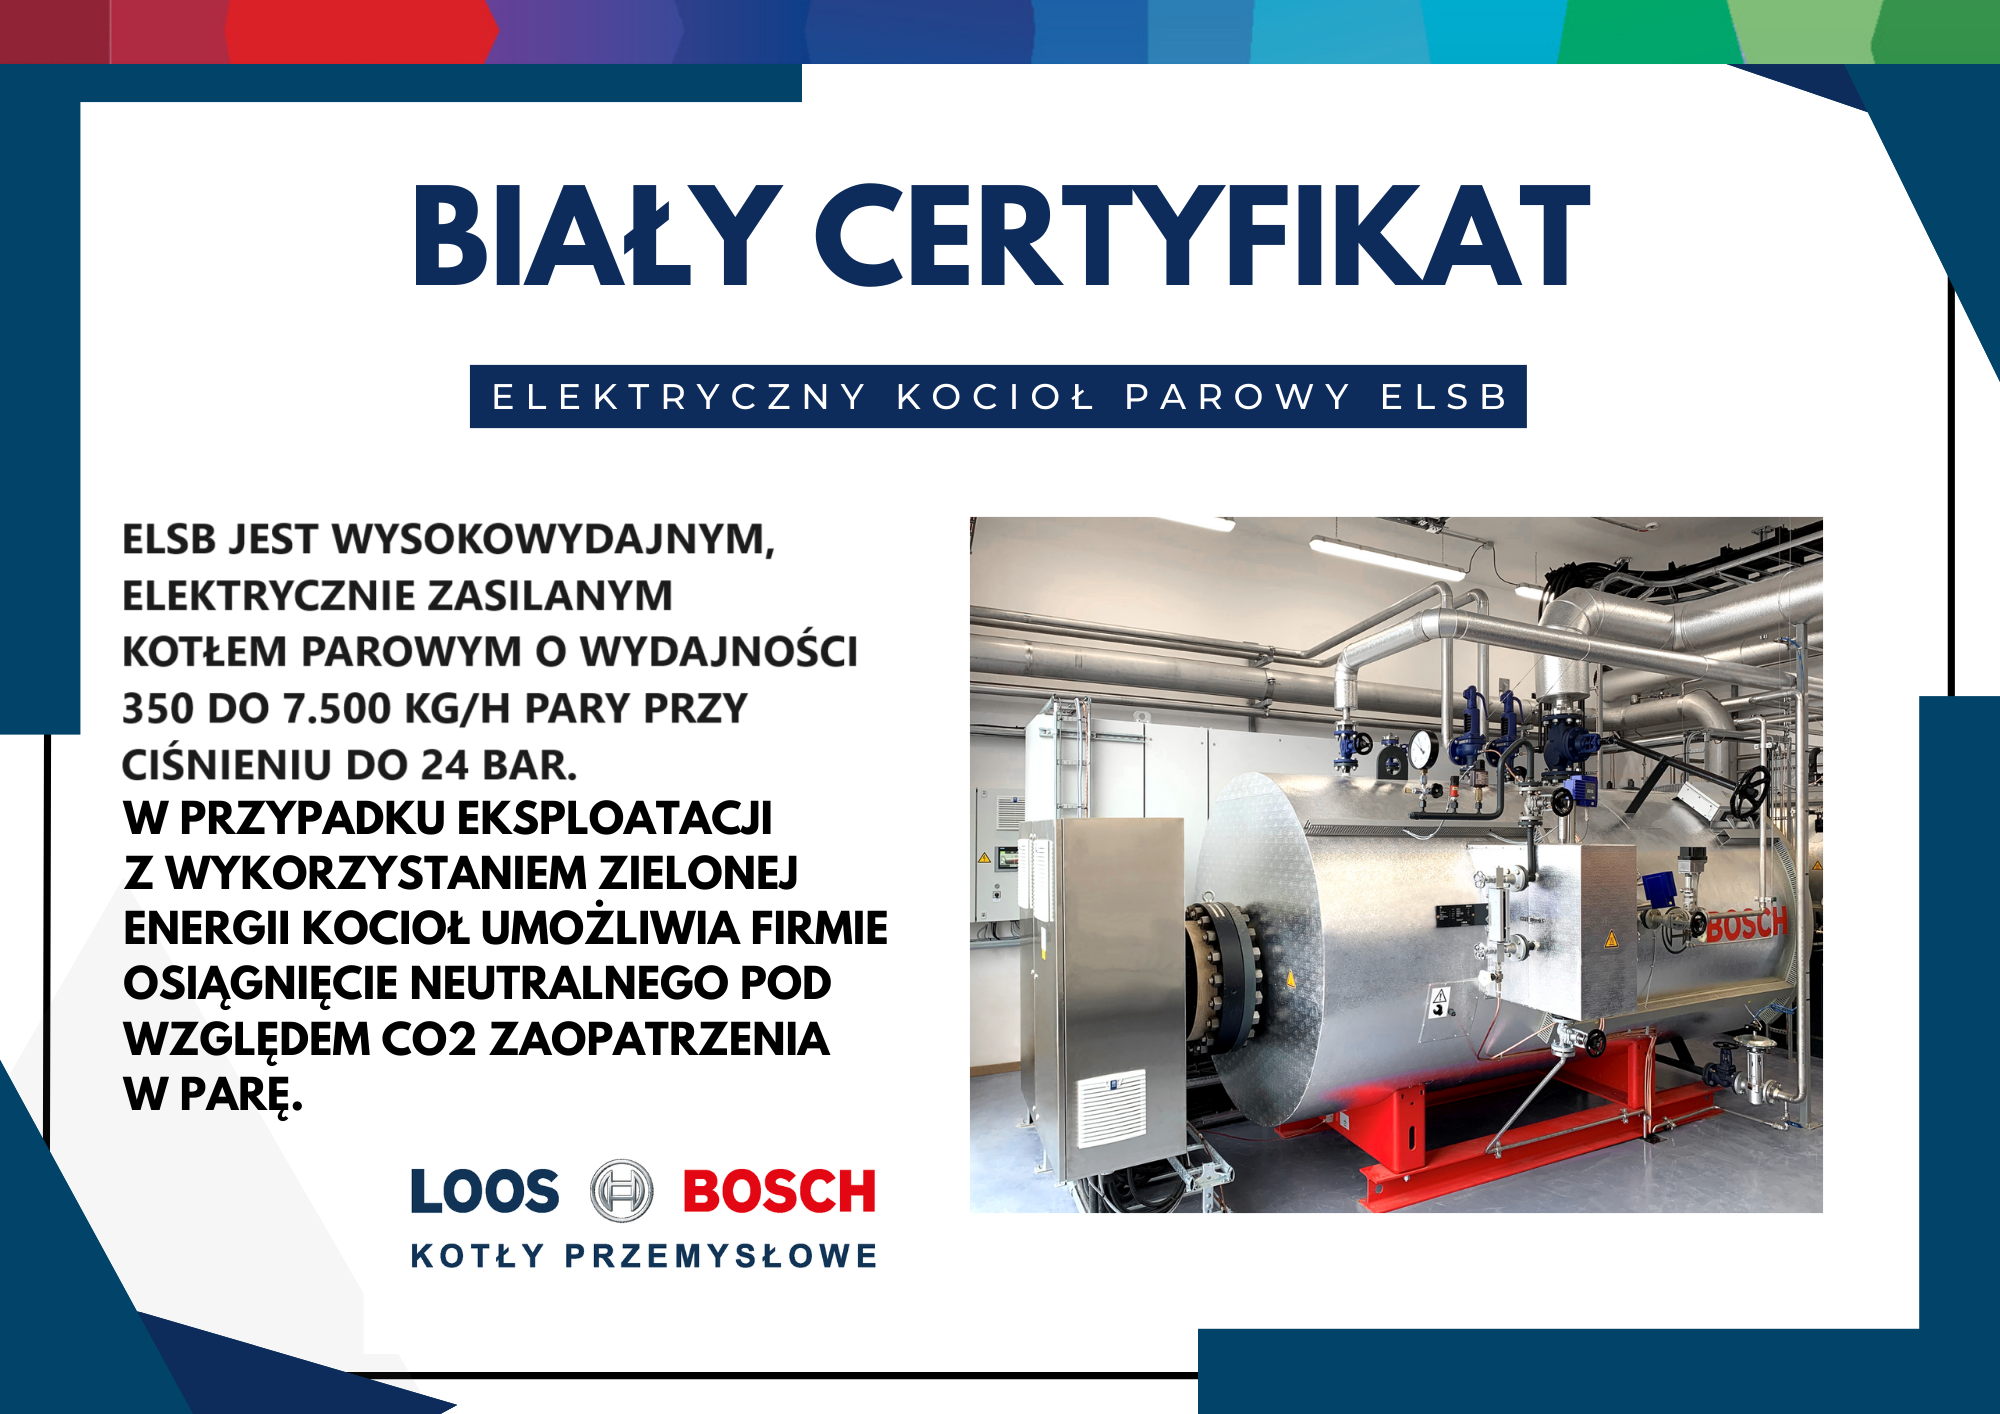 Biały certyfikat - elektryczny ELSB 